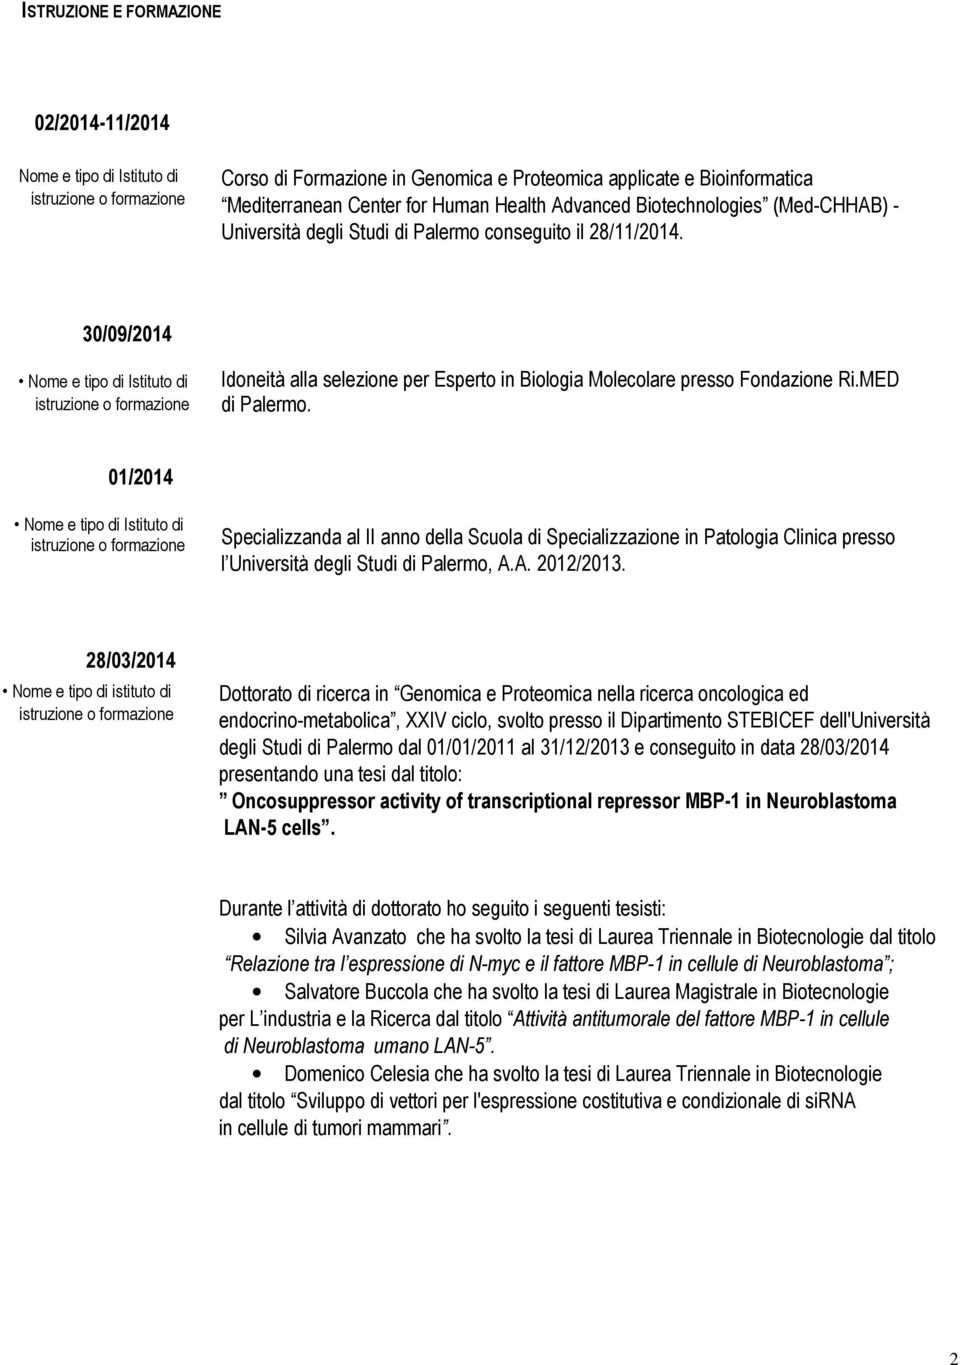 01/2014 Specializzanda al II anno della Scuola di Specializzazione in Patologia Clinica presso l Università degli Studi di Palermo, A.A. 2012/2013.